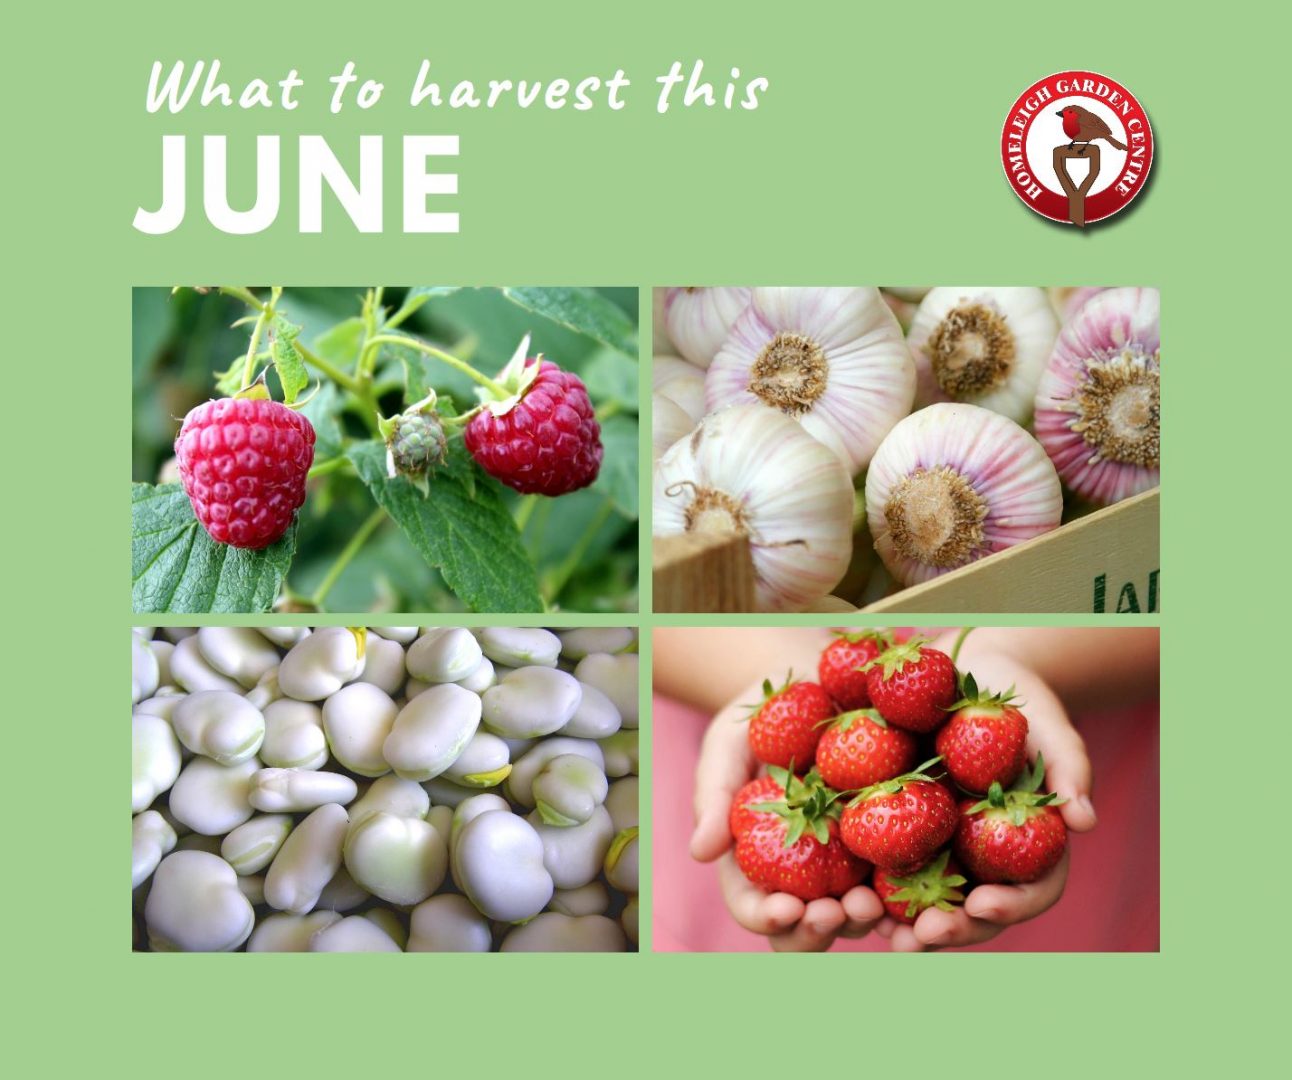 Harvest this June